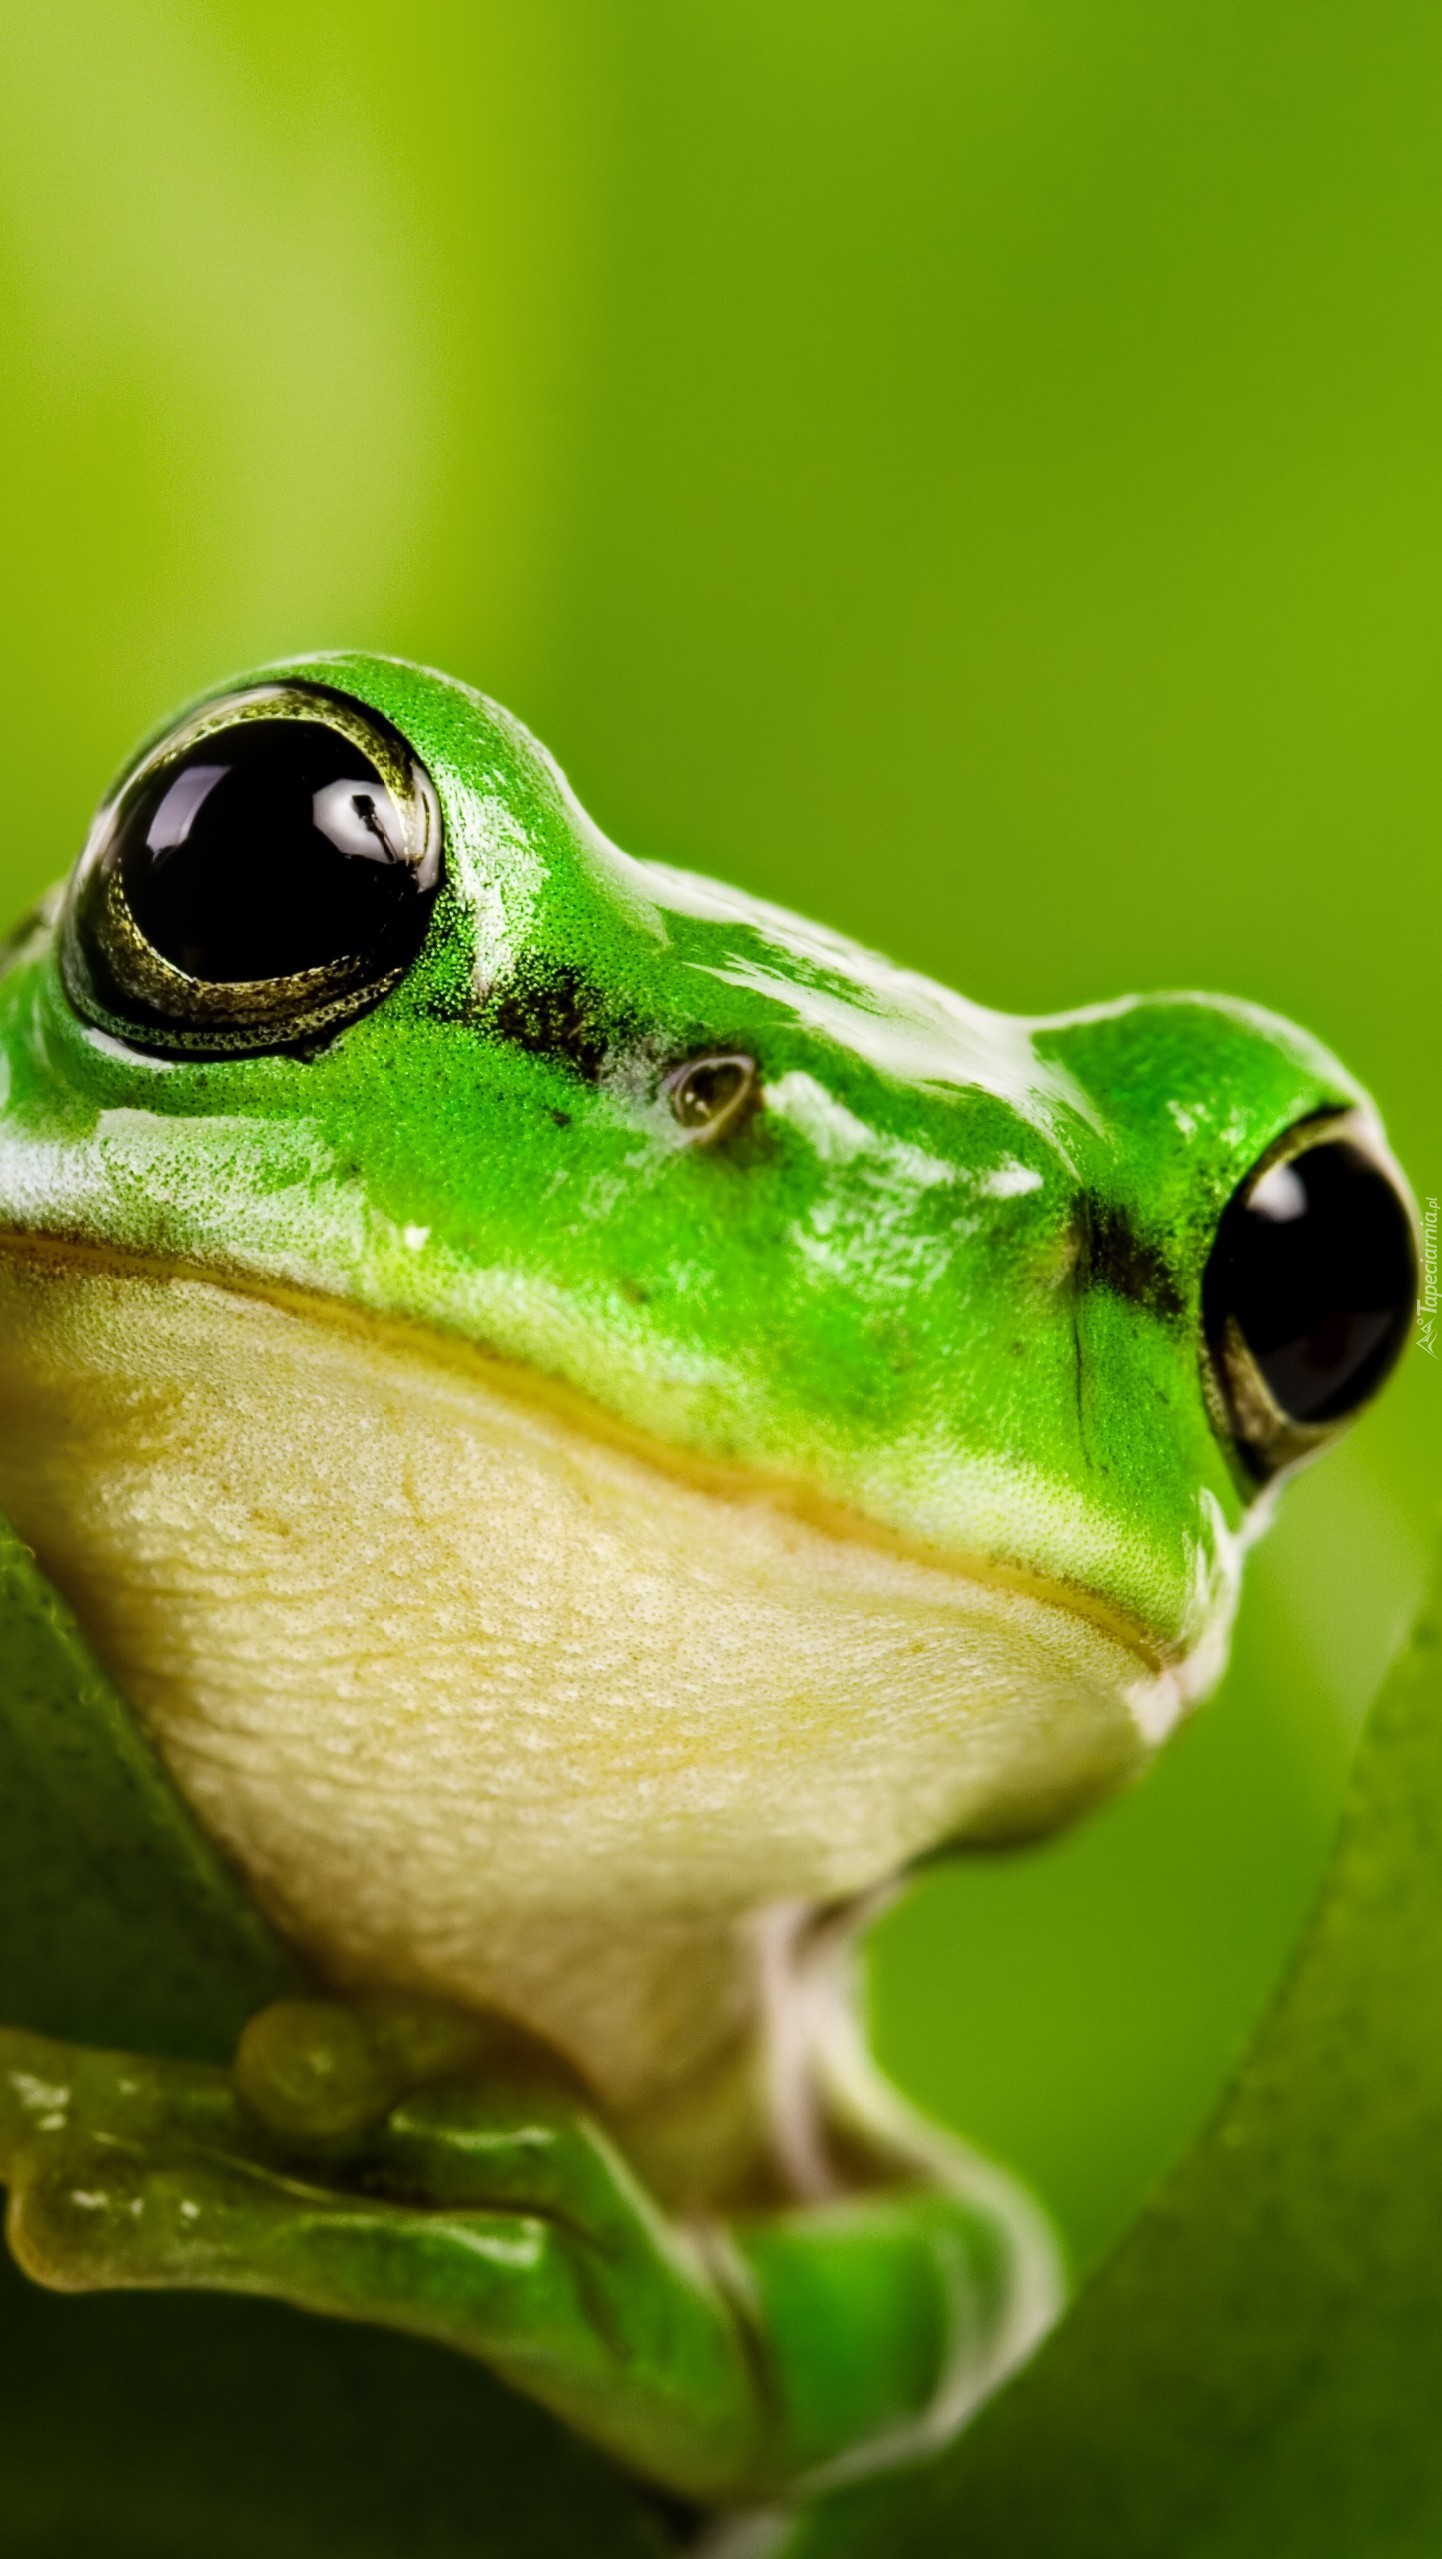 Urocza zielona żabcia na liściu